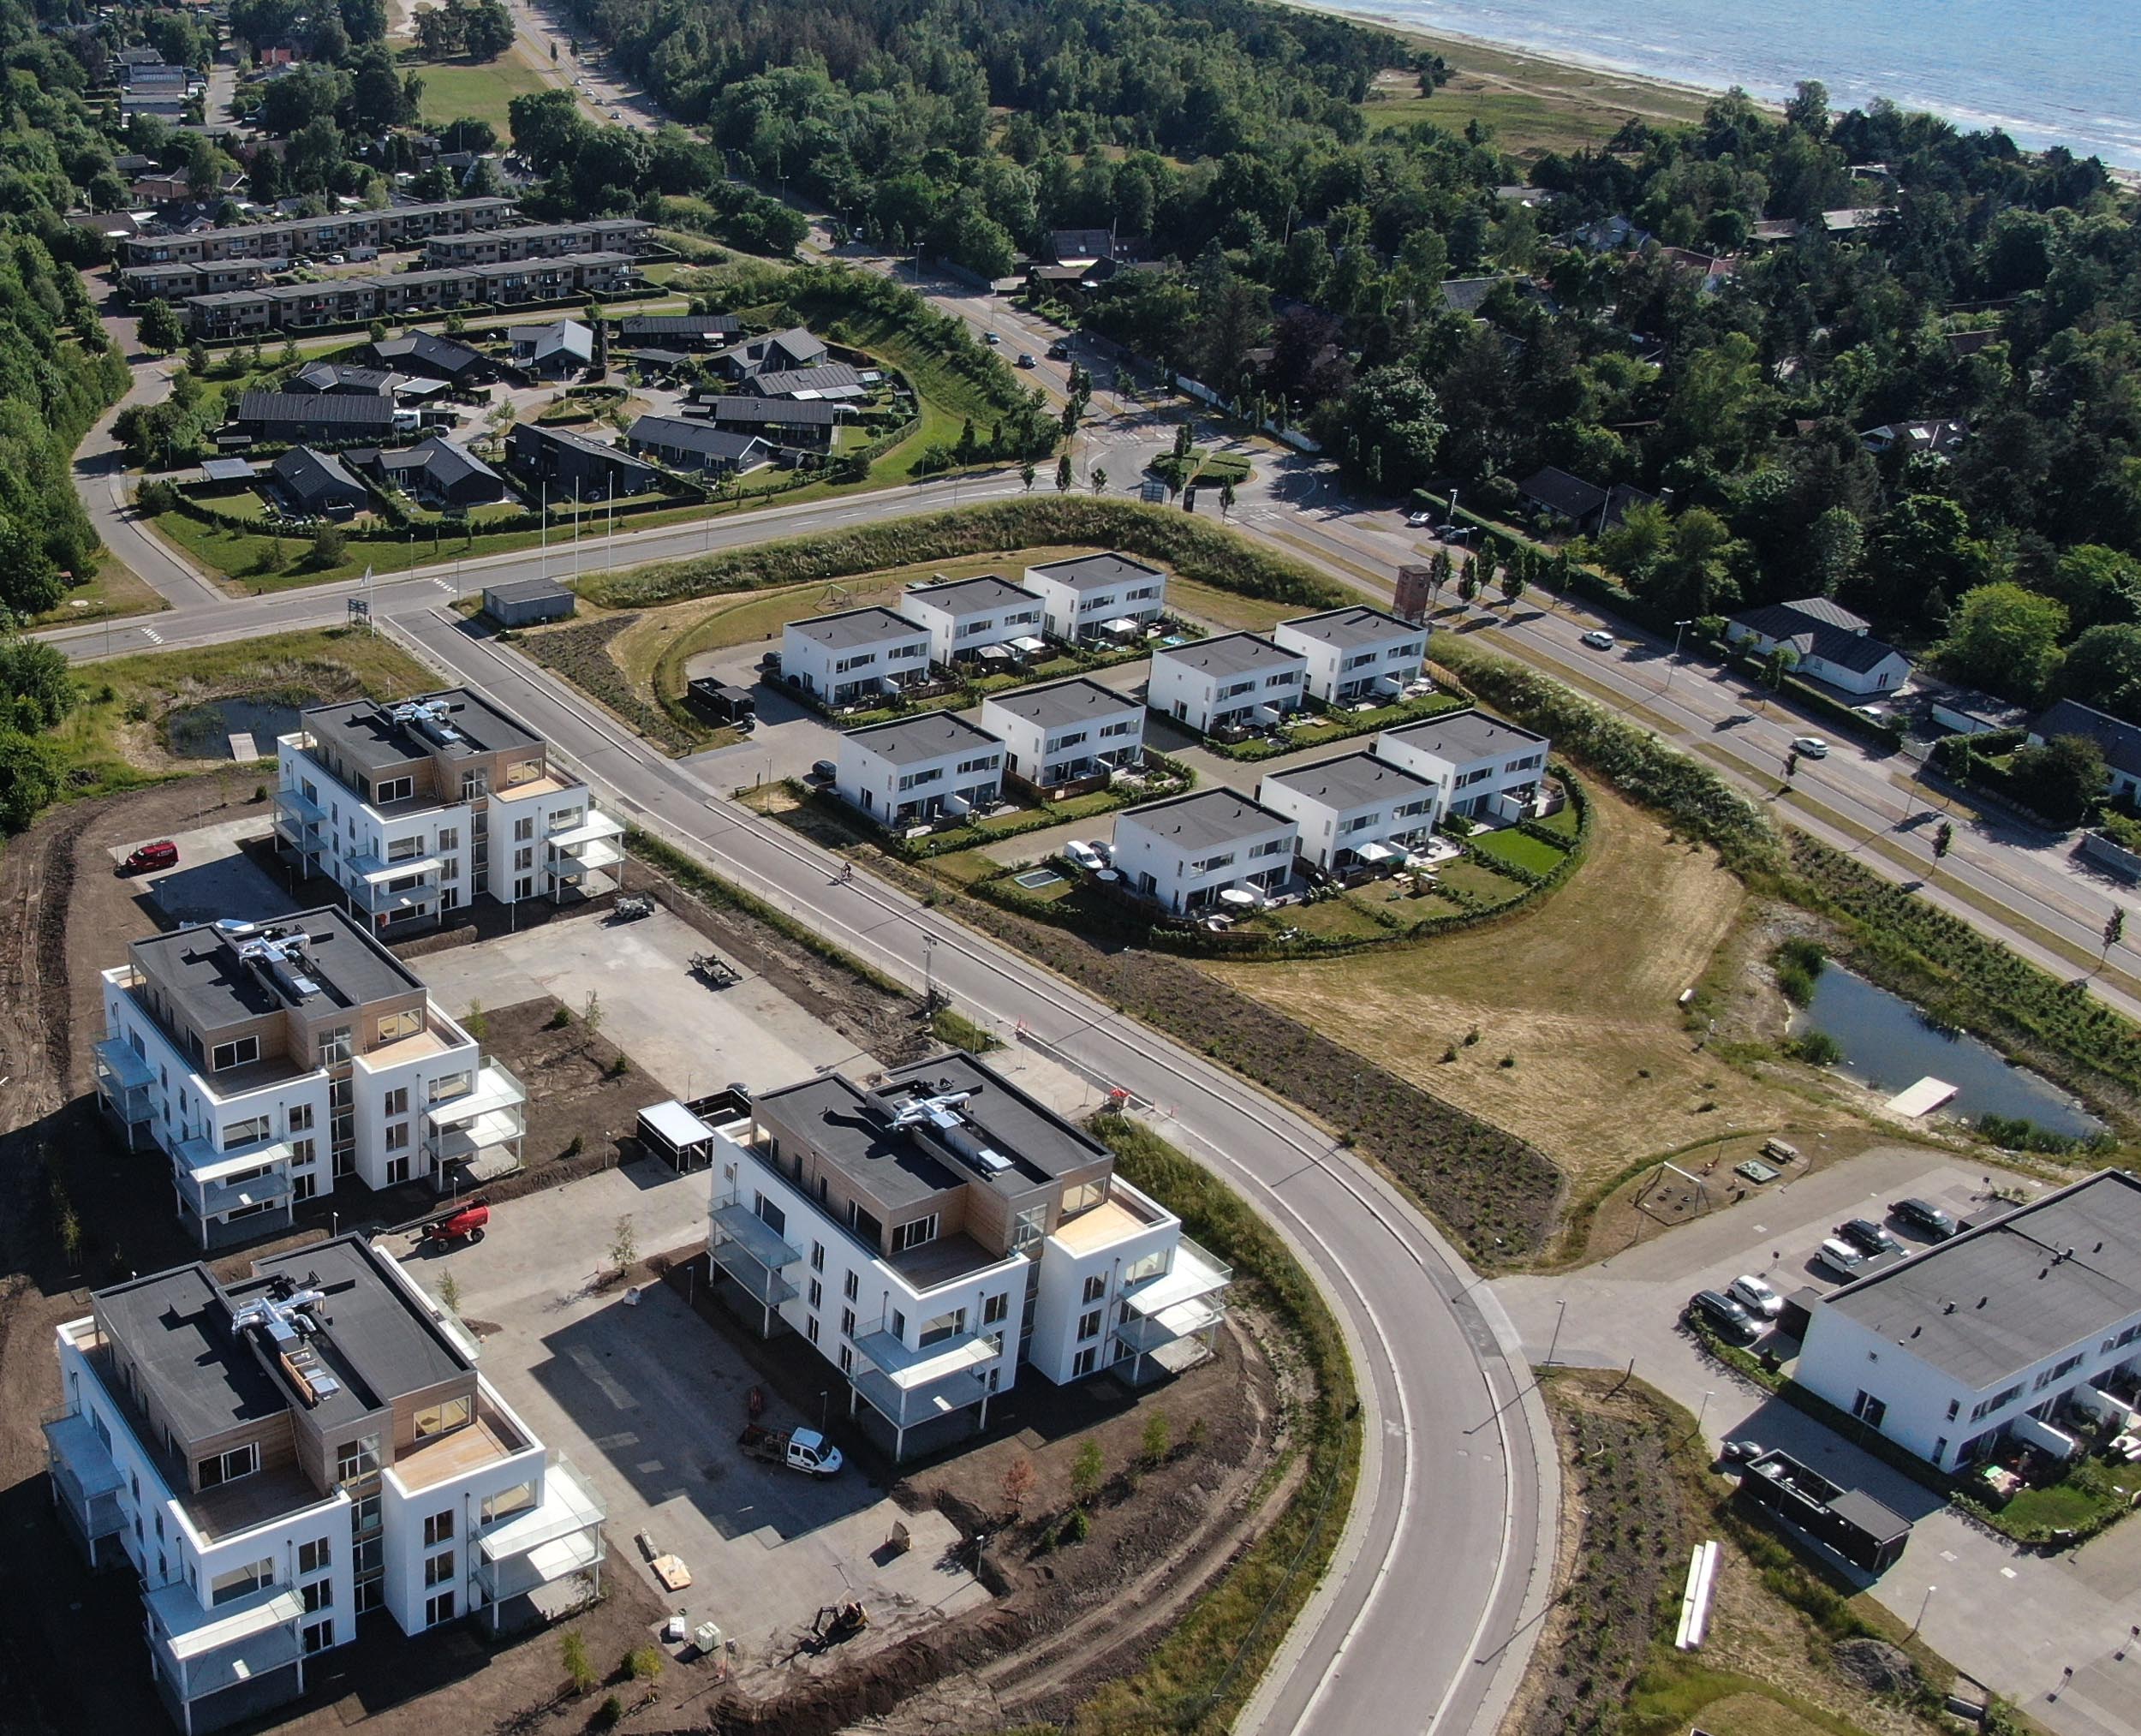 Rendezvous forkæle forsvar Punkthuse på plads på Troldmands Allé trods leveranceudfordringer -  Building Supply DK